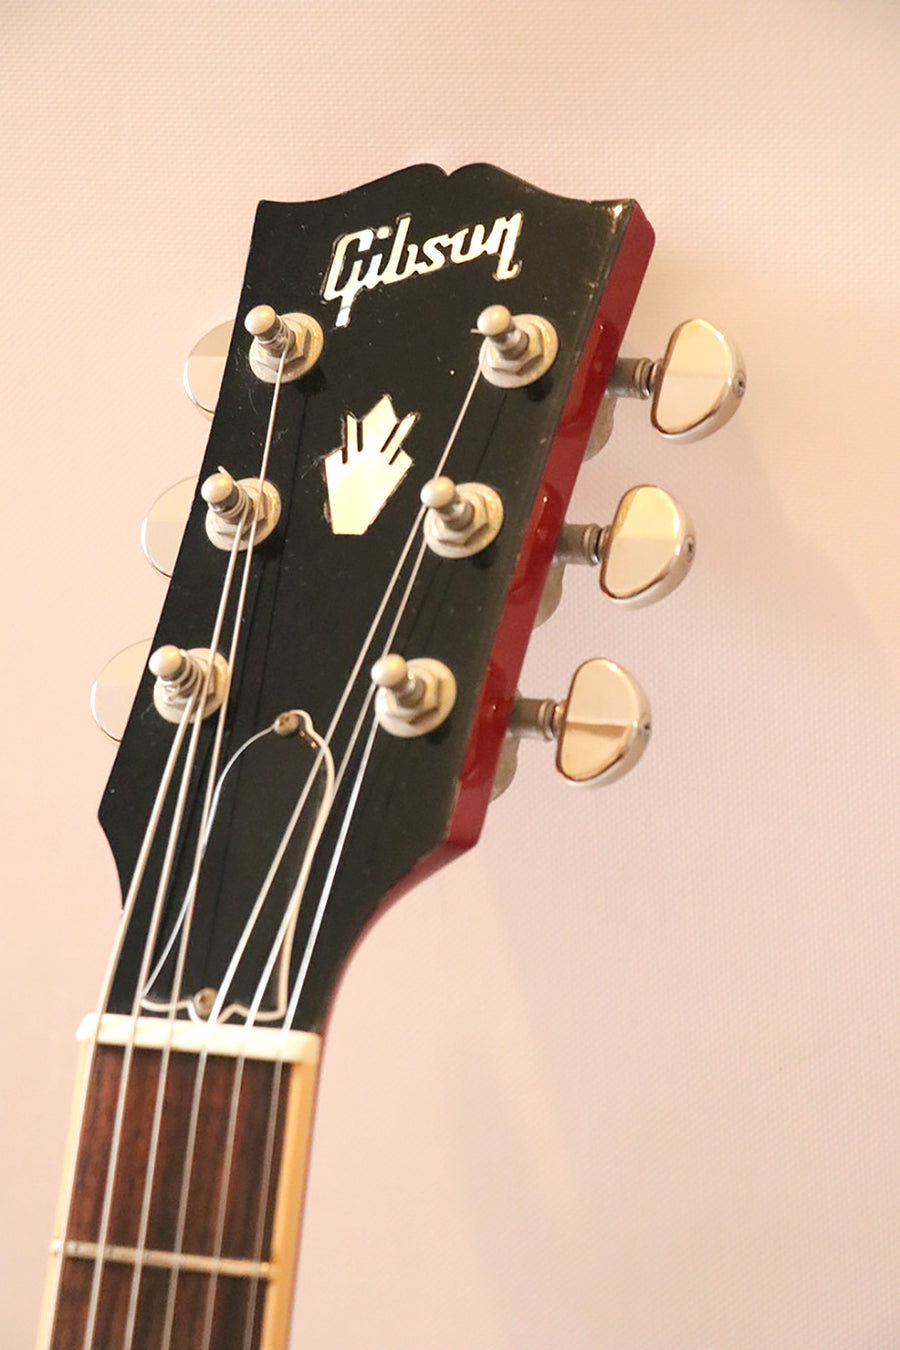 Gibson ES-335 Cherry 2014